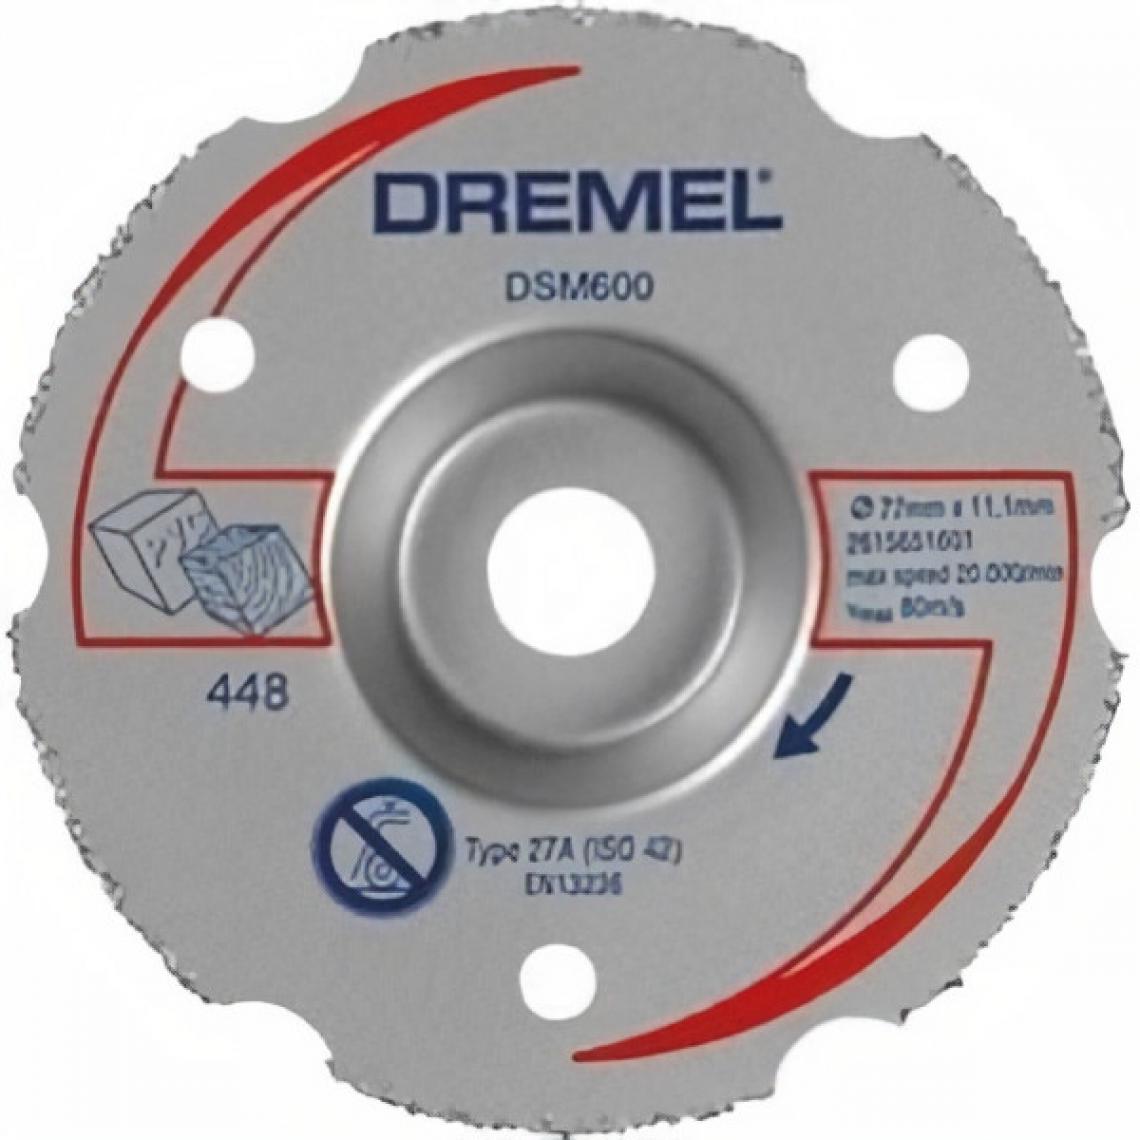 Dremel - DREMEL Disque S600 Scie Compact DSM20 - Accessoires sciage, tronçonnage